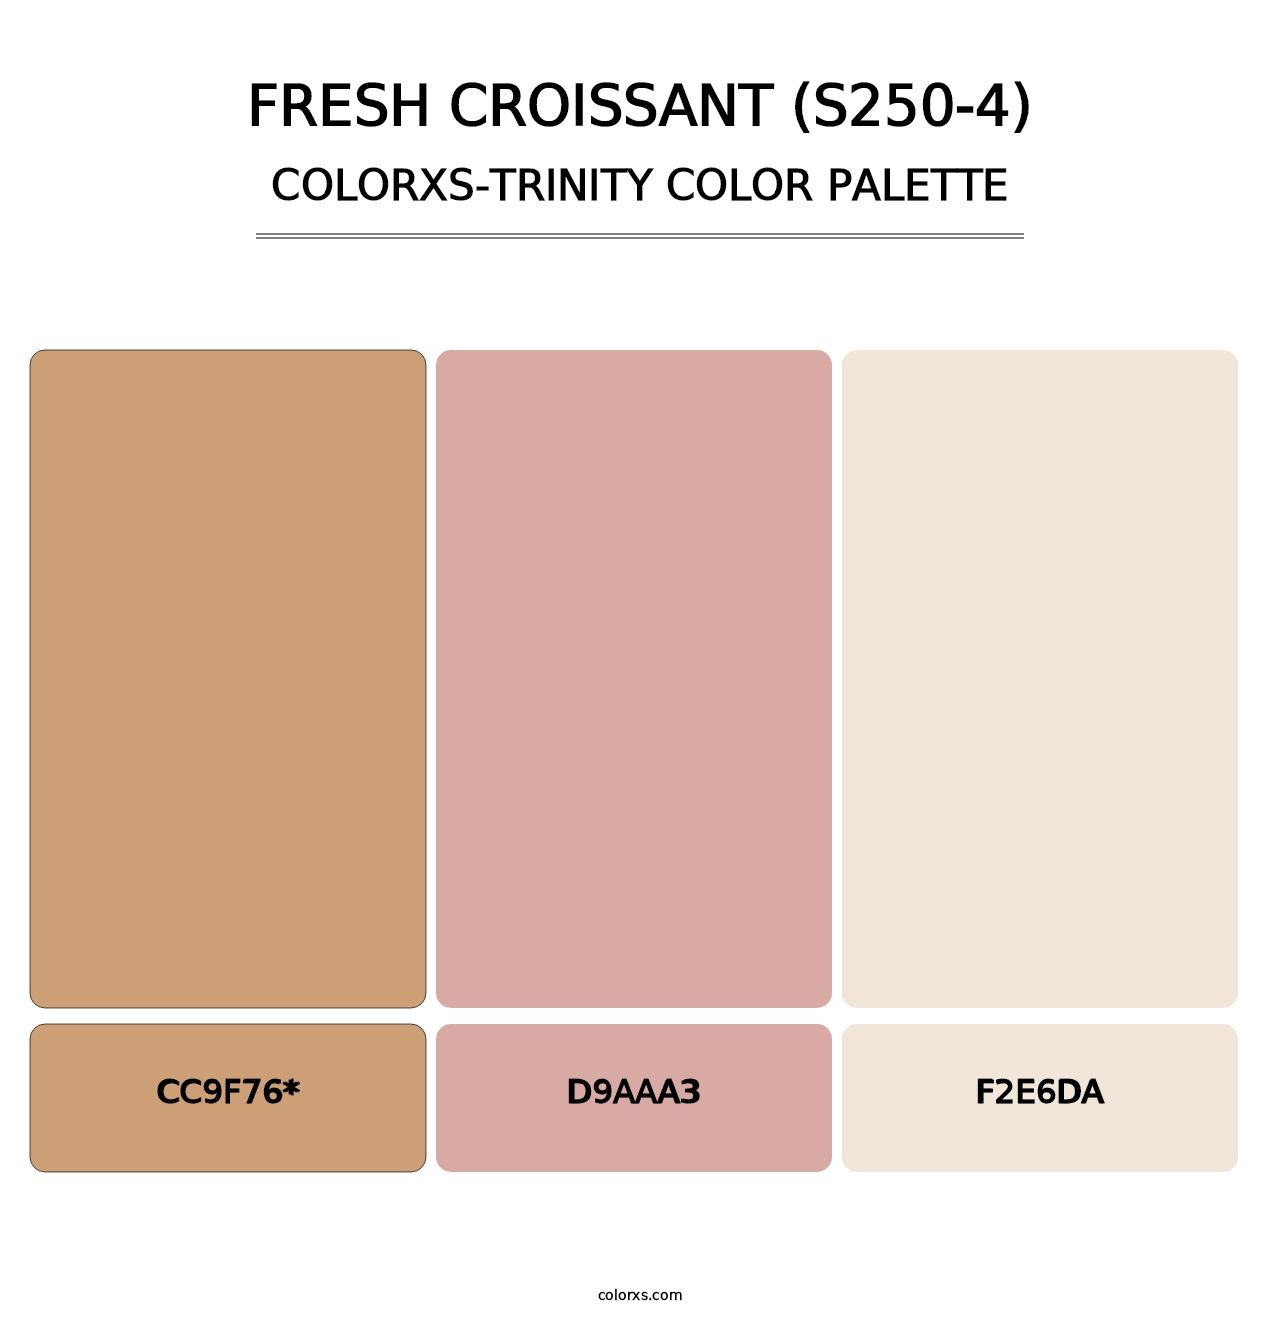 Fresh Croissant (S250-4) - Colorxs Trinity Palette